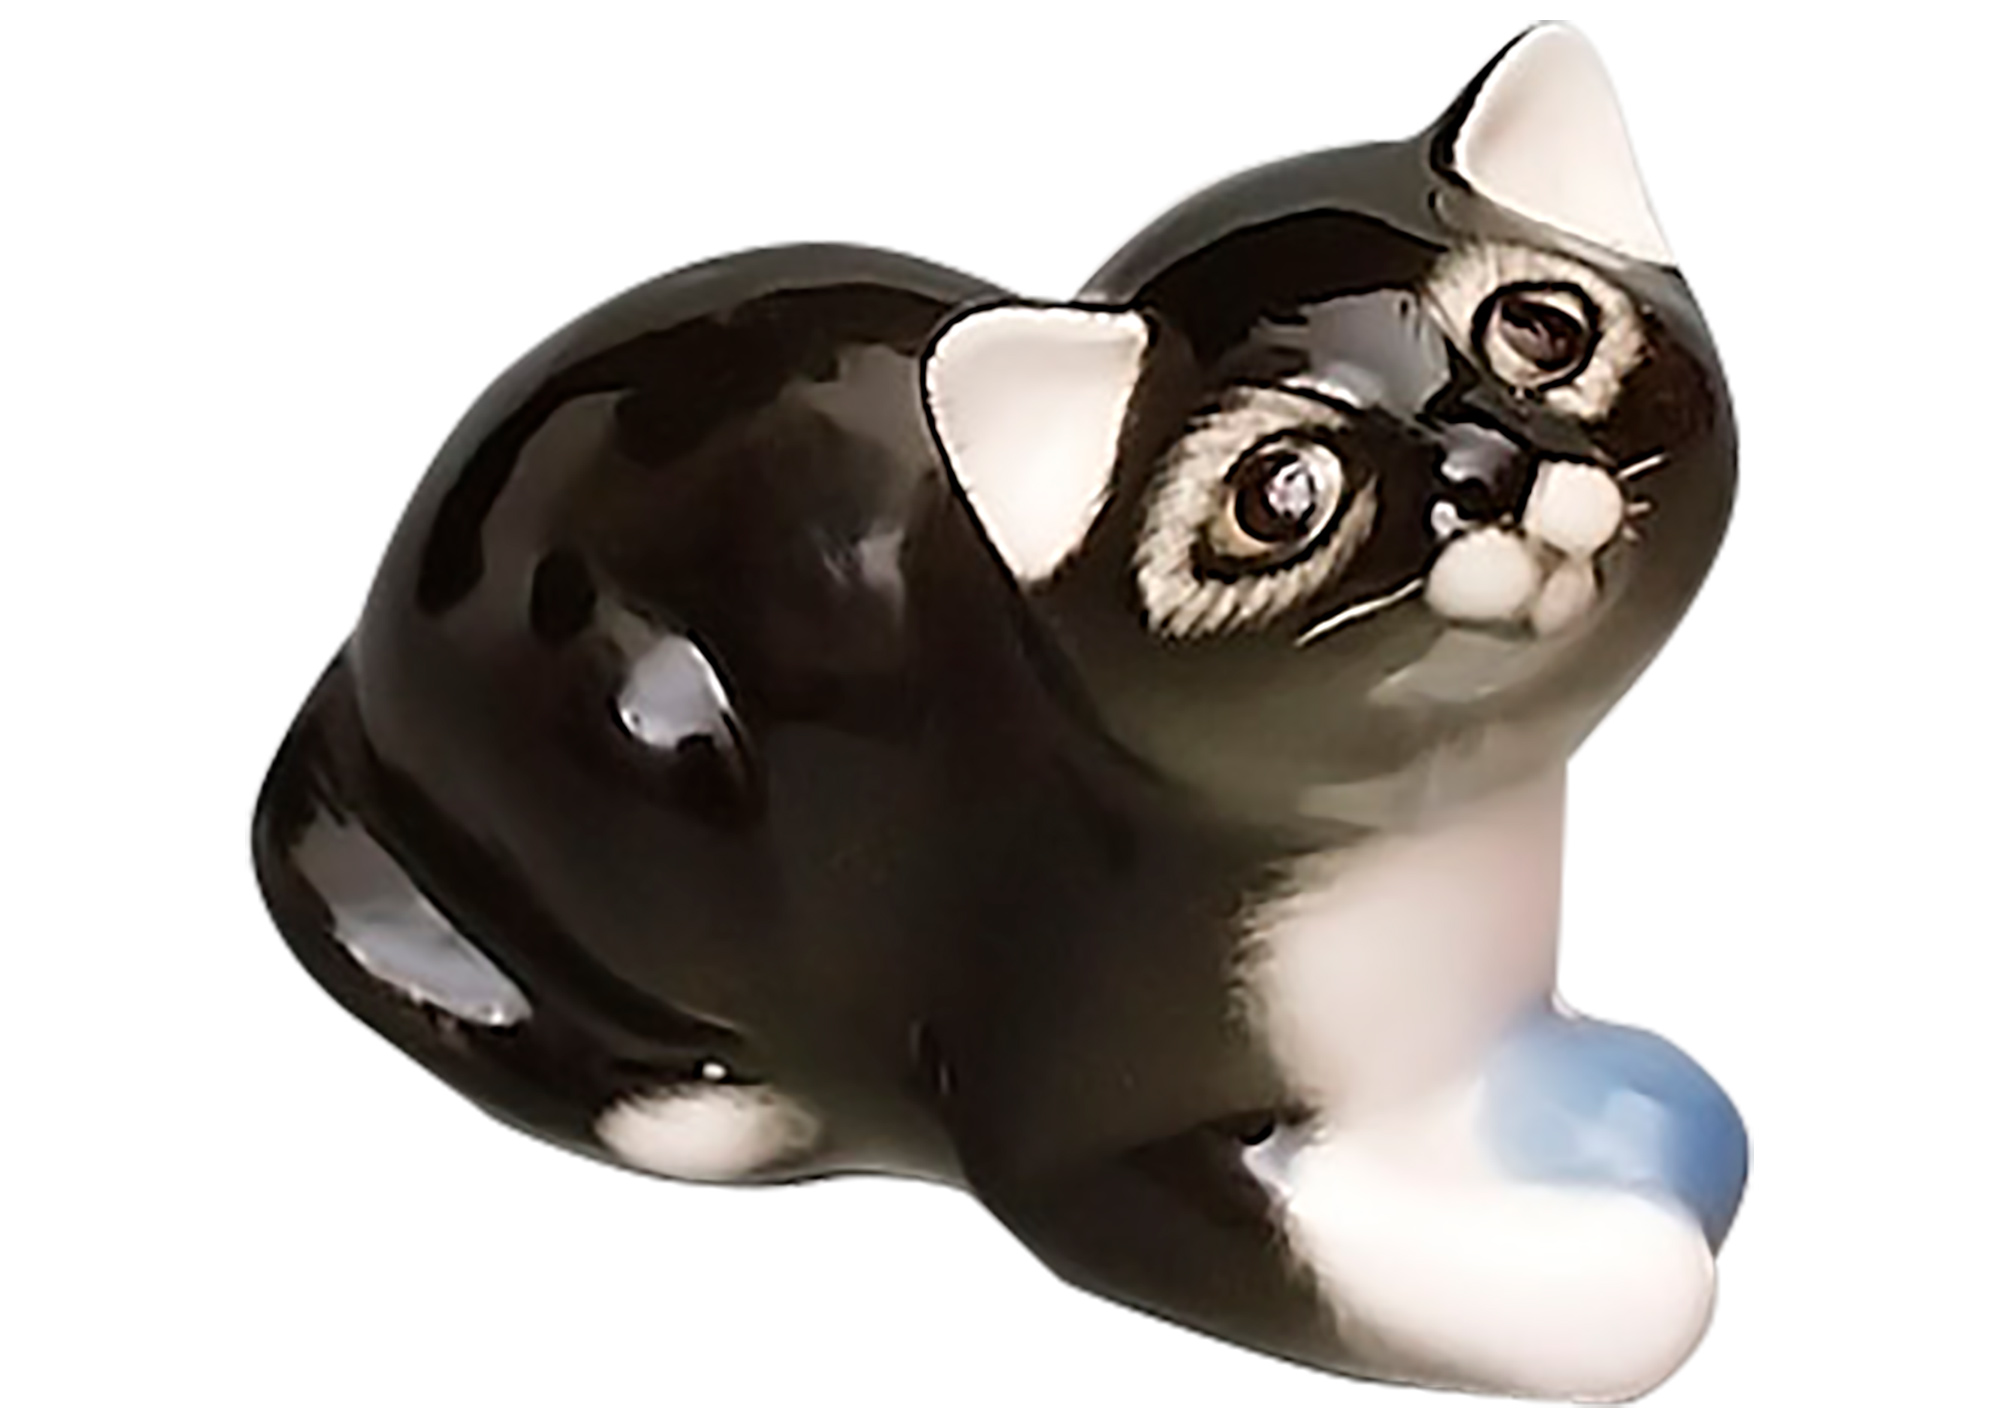 Buy Dark Kitten with a Ball Figurine at GoldenCockerel.com